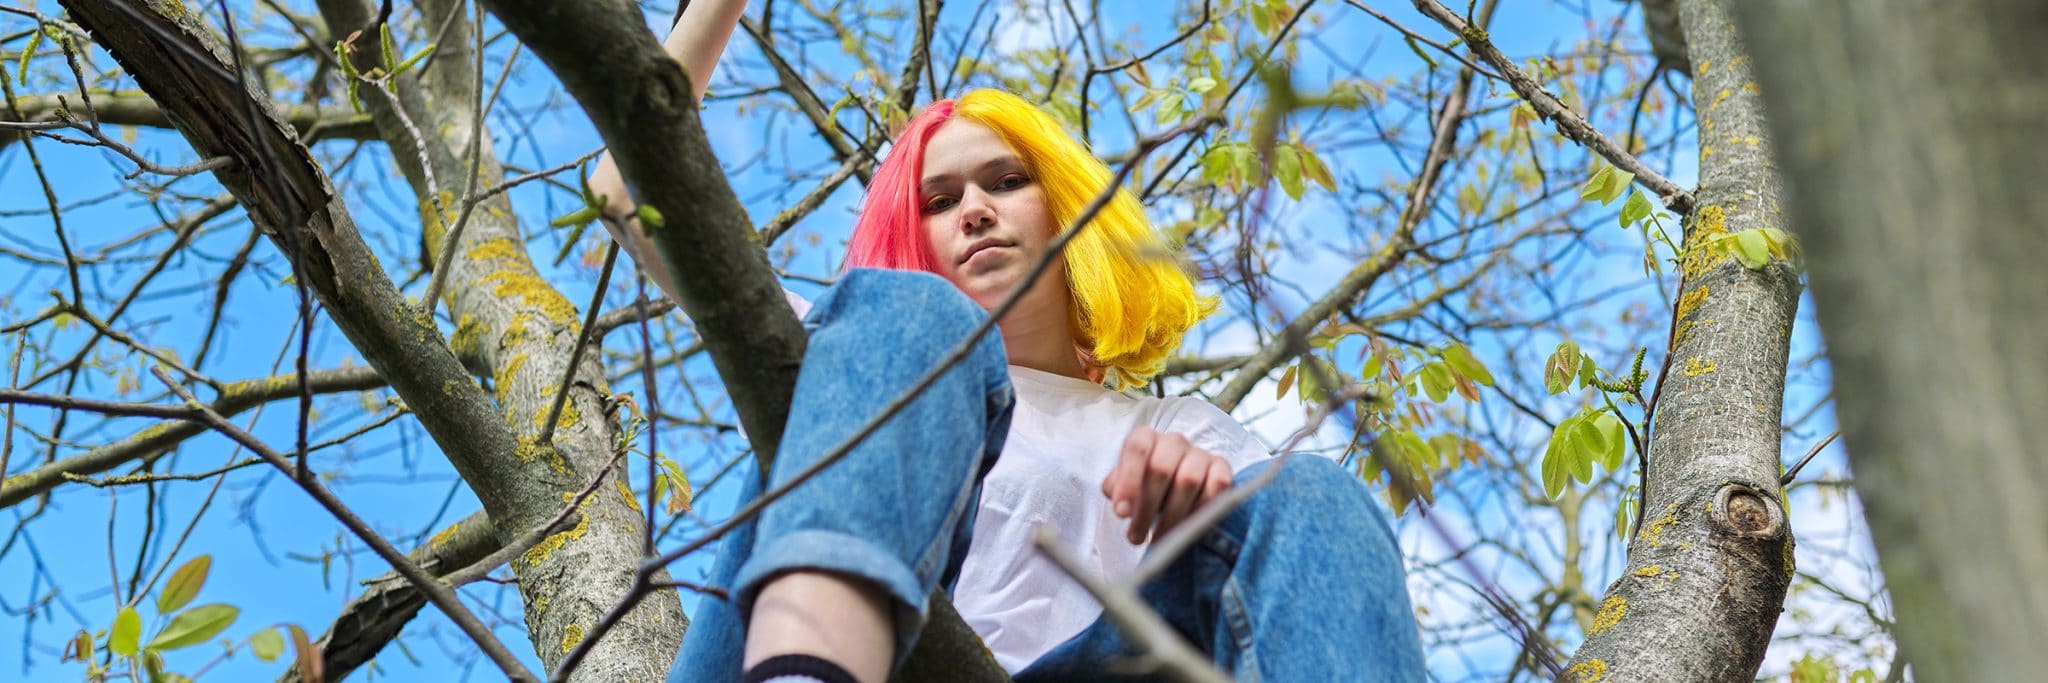 Ung tjej med håret färgat i rosa och gult, sitter i ett träd.